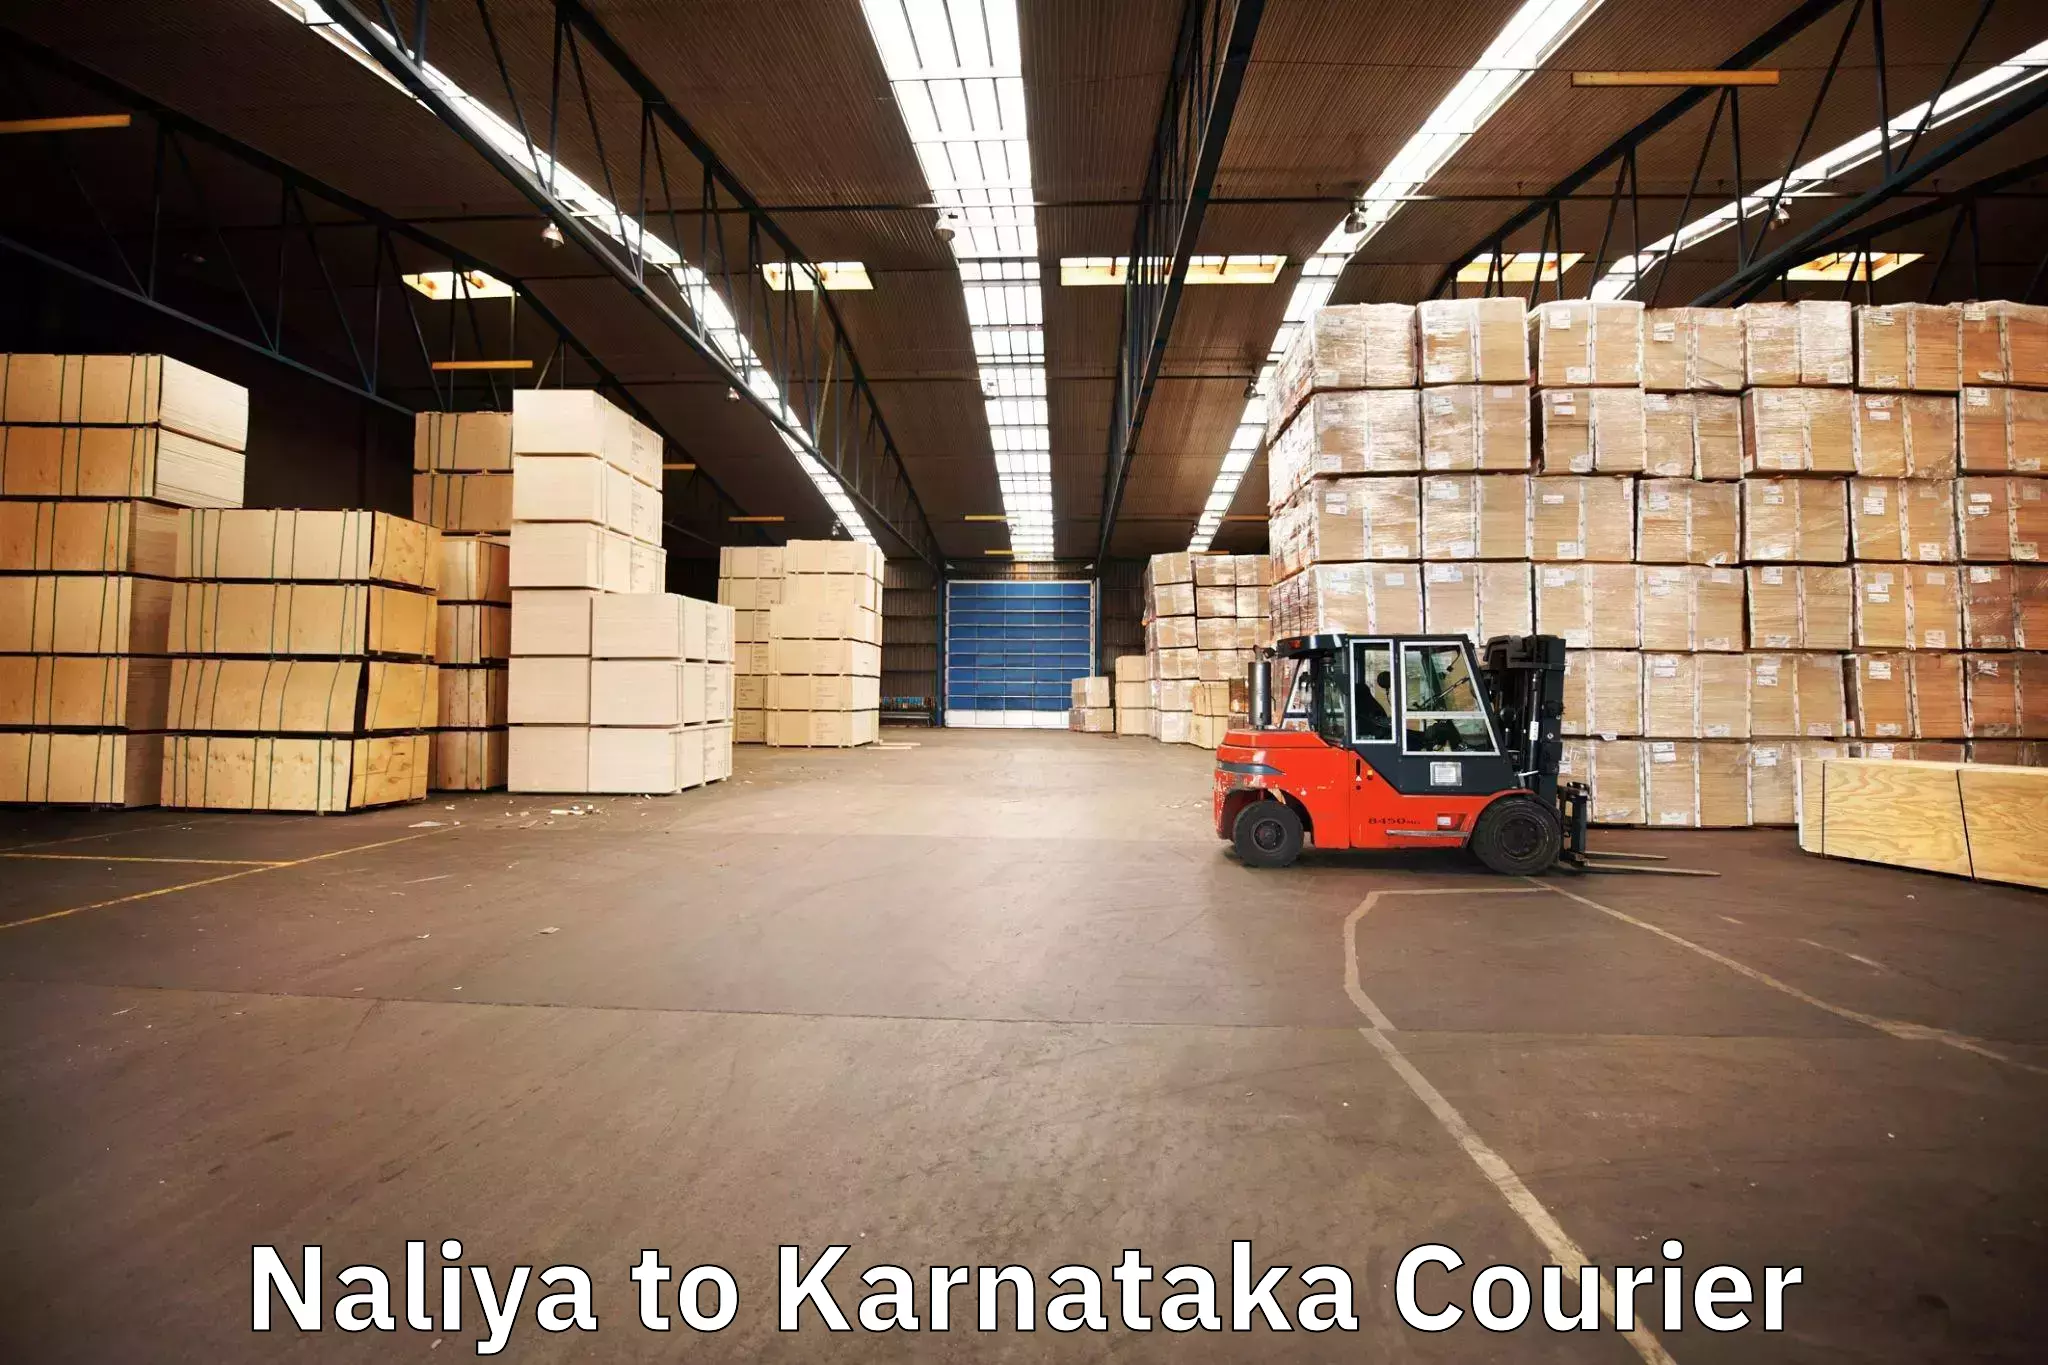 Efficient moving company Naliya to Yellare